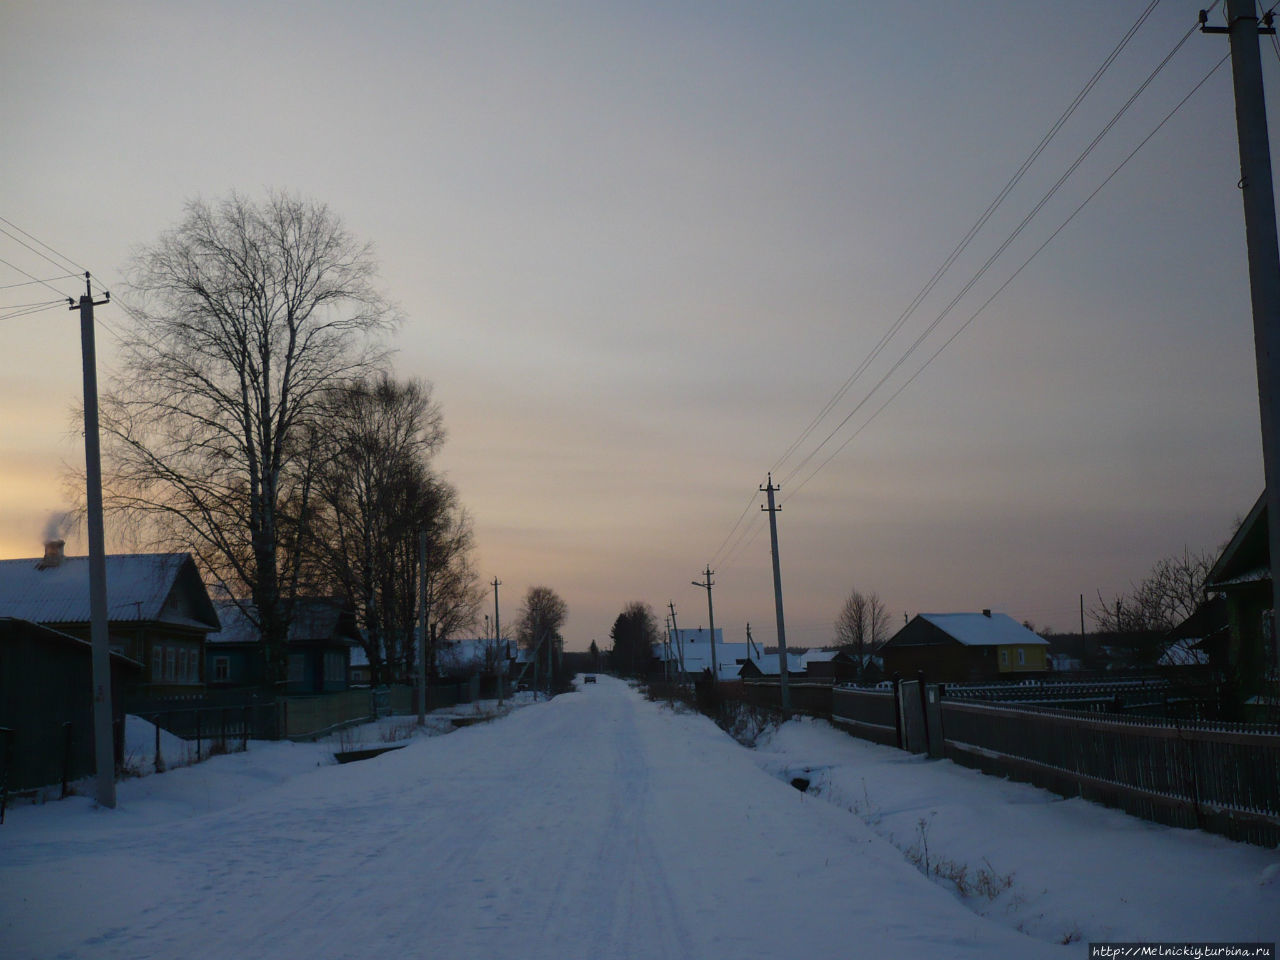 Вот моя деревня.... Маэкса, Россия